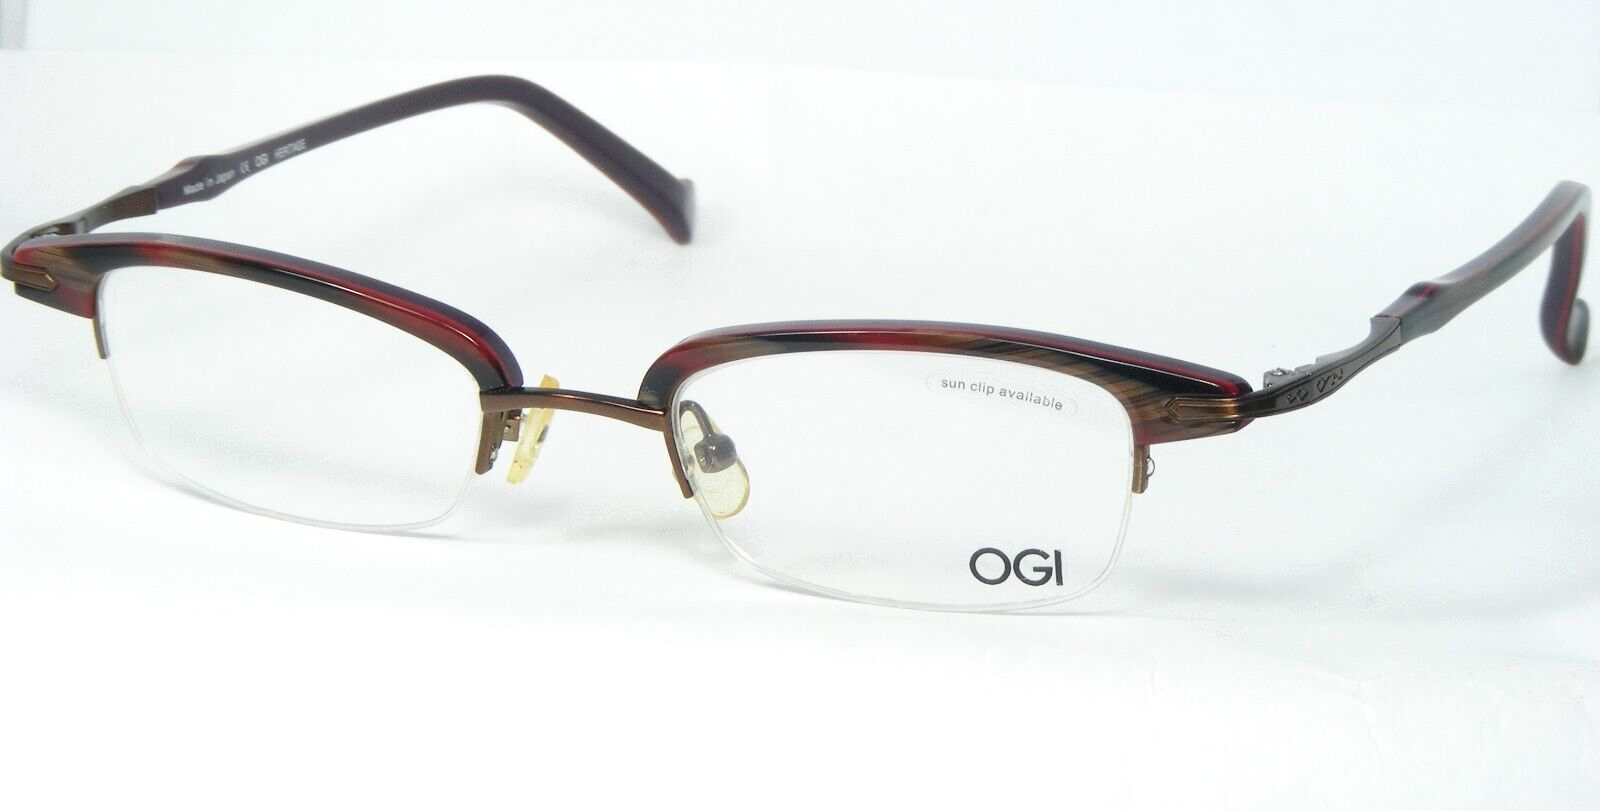 Primary image for OGI Heritage Mod 4023 1240 Bunt Brille Brillengestell 46-20-140mm Japan